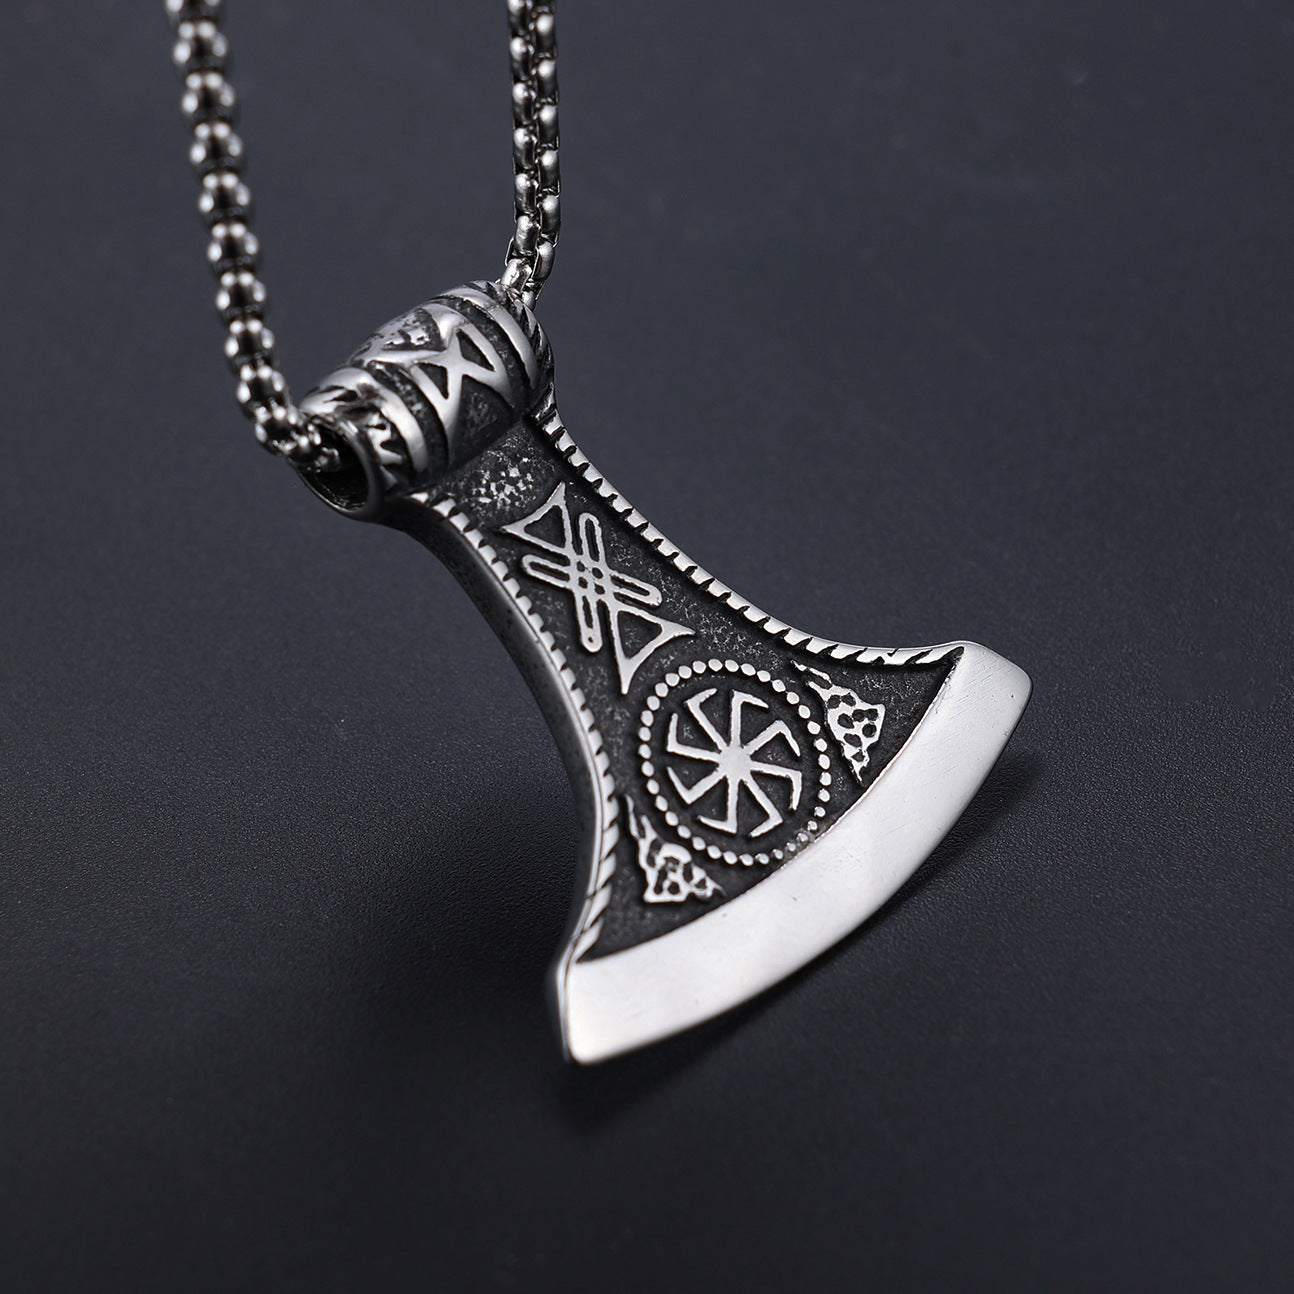 Vintage Viking Mythology Ax Pendant Necklace